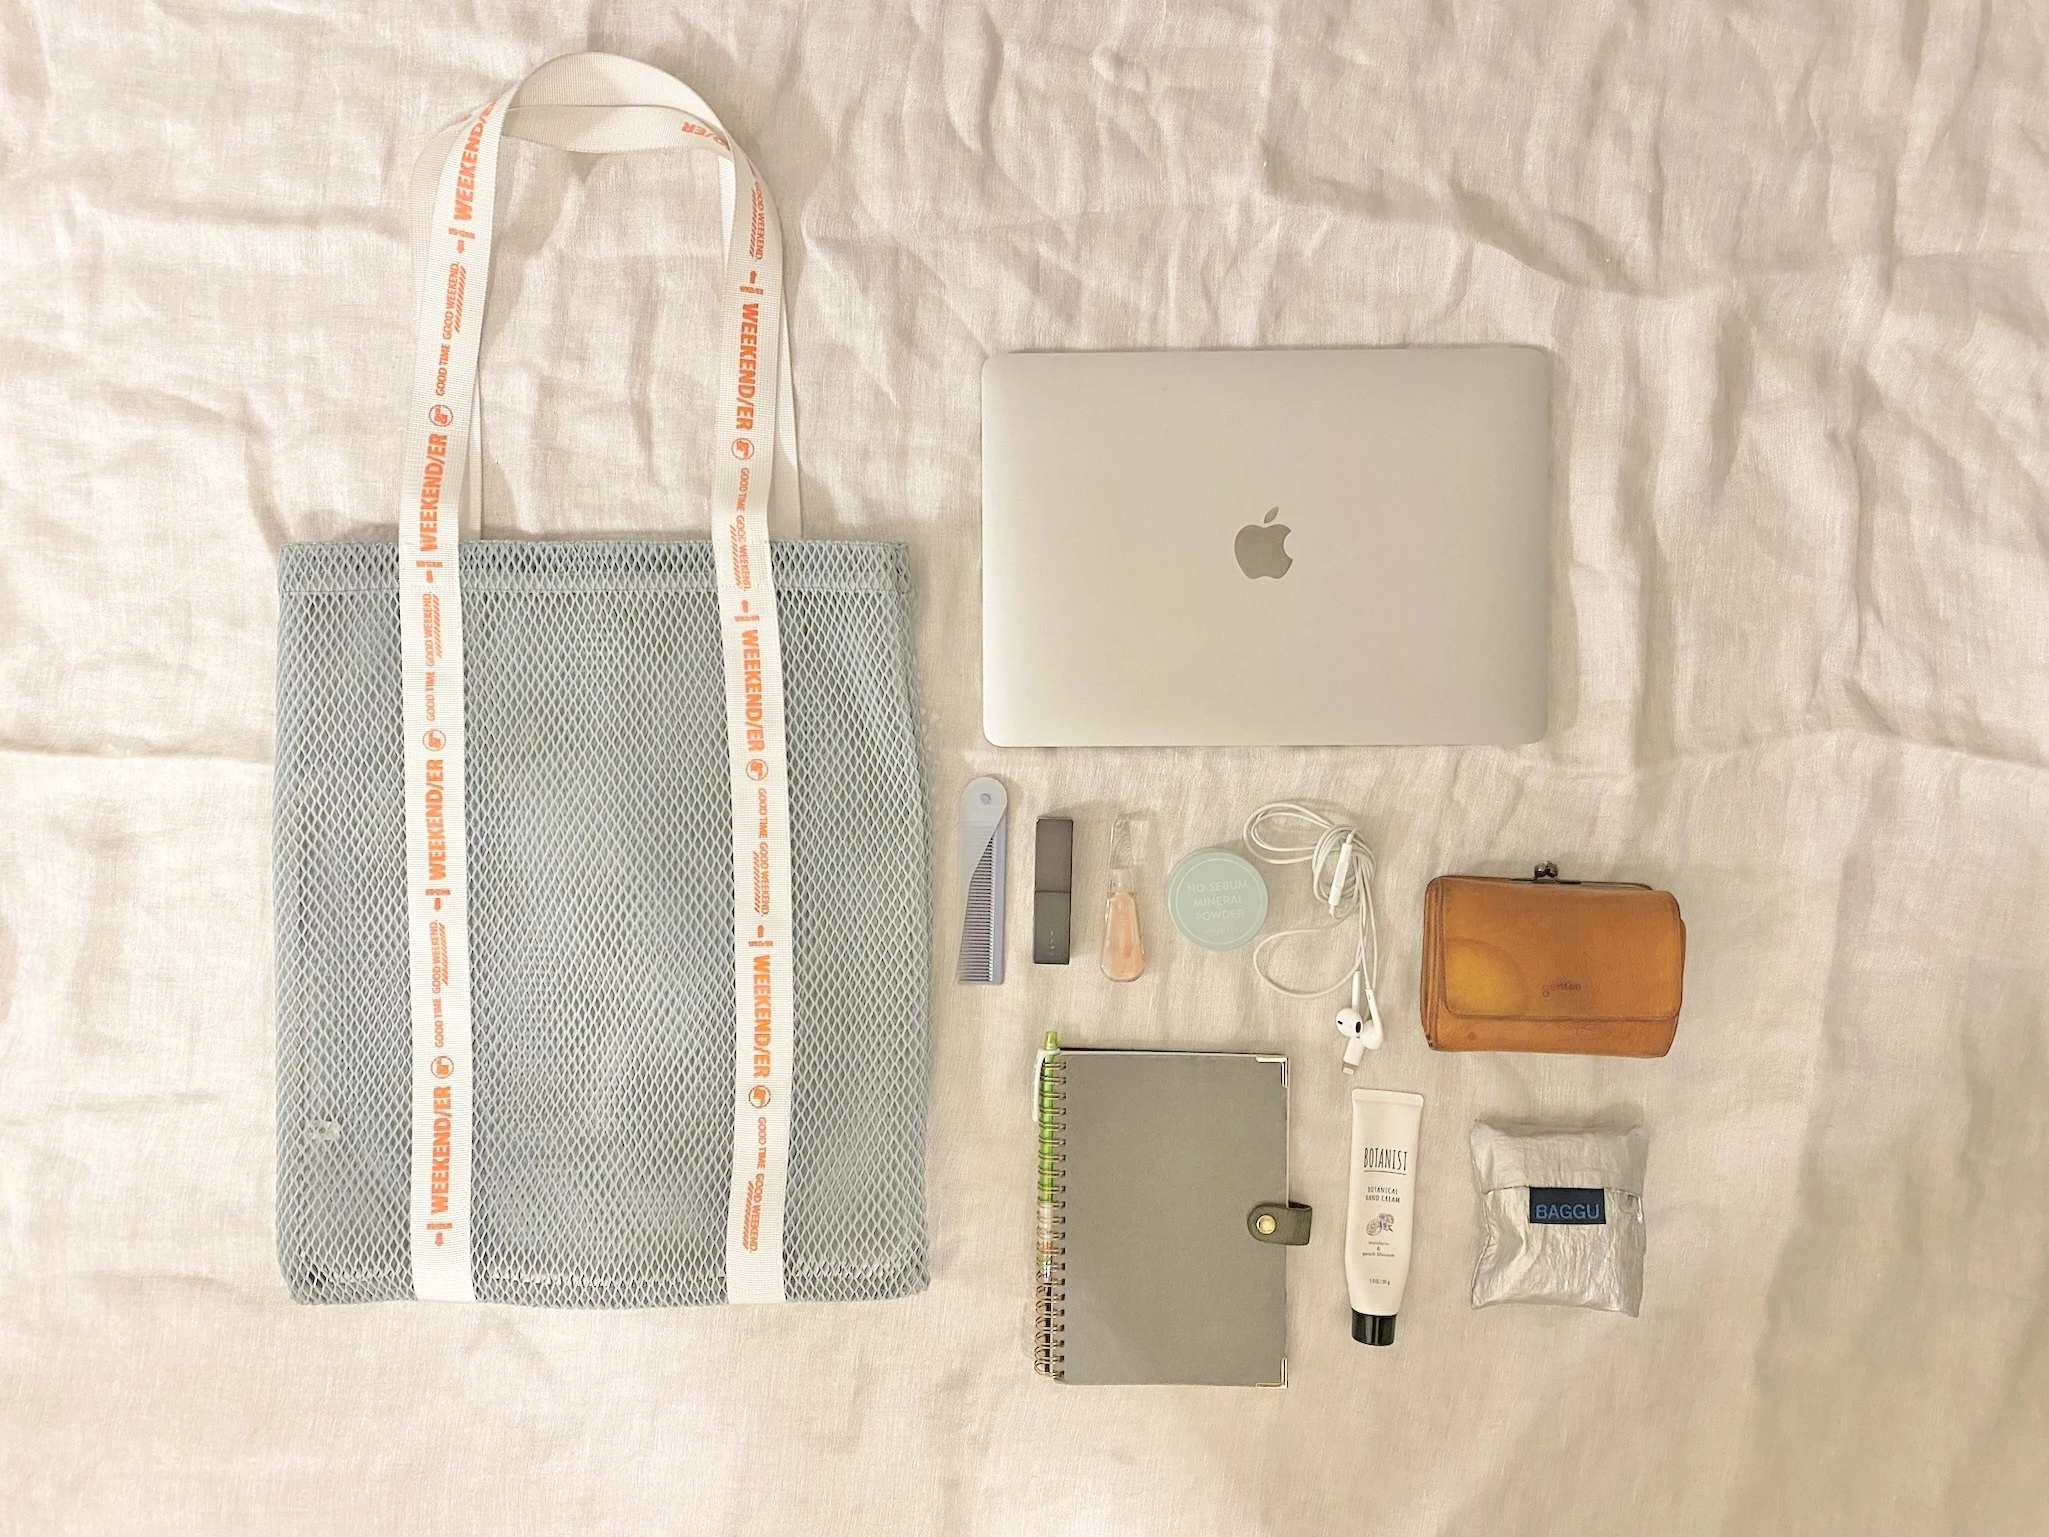 WEEKEND（ER）のバッグ、MacBook Air、gentenのお財布、threeのリップ、BAGGUのエコバック、イヤホン、イニスフリーのフェイスパウダー、ノート